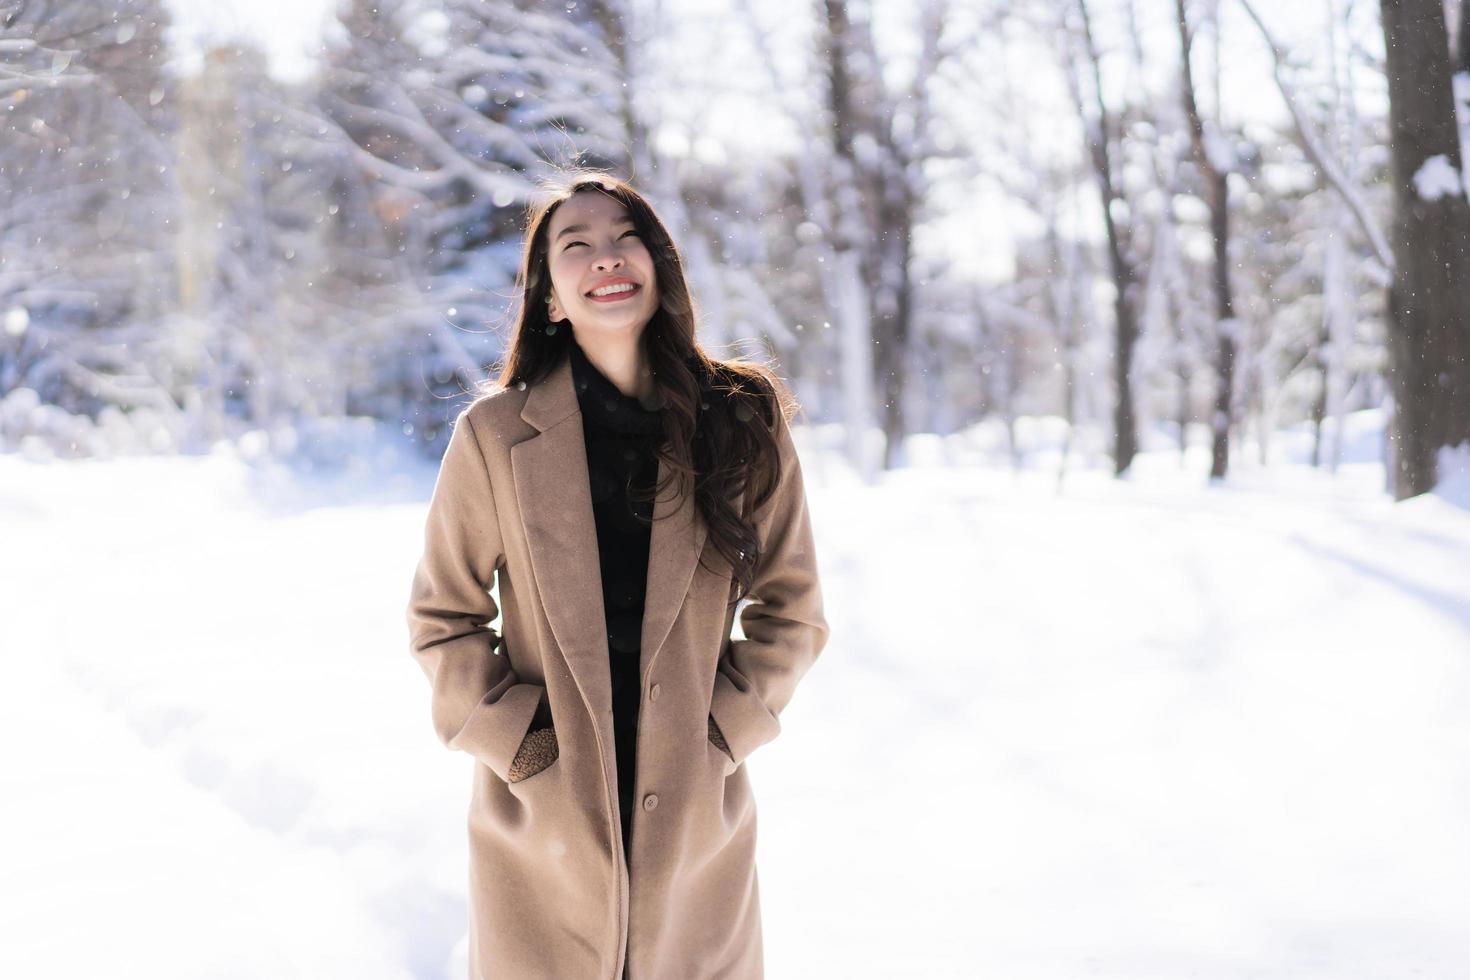 retrato jovem linda mulher asiática sorrir feliz viajar e desfrutar com neve inverno temporada foto